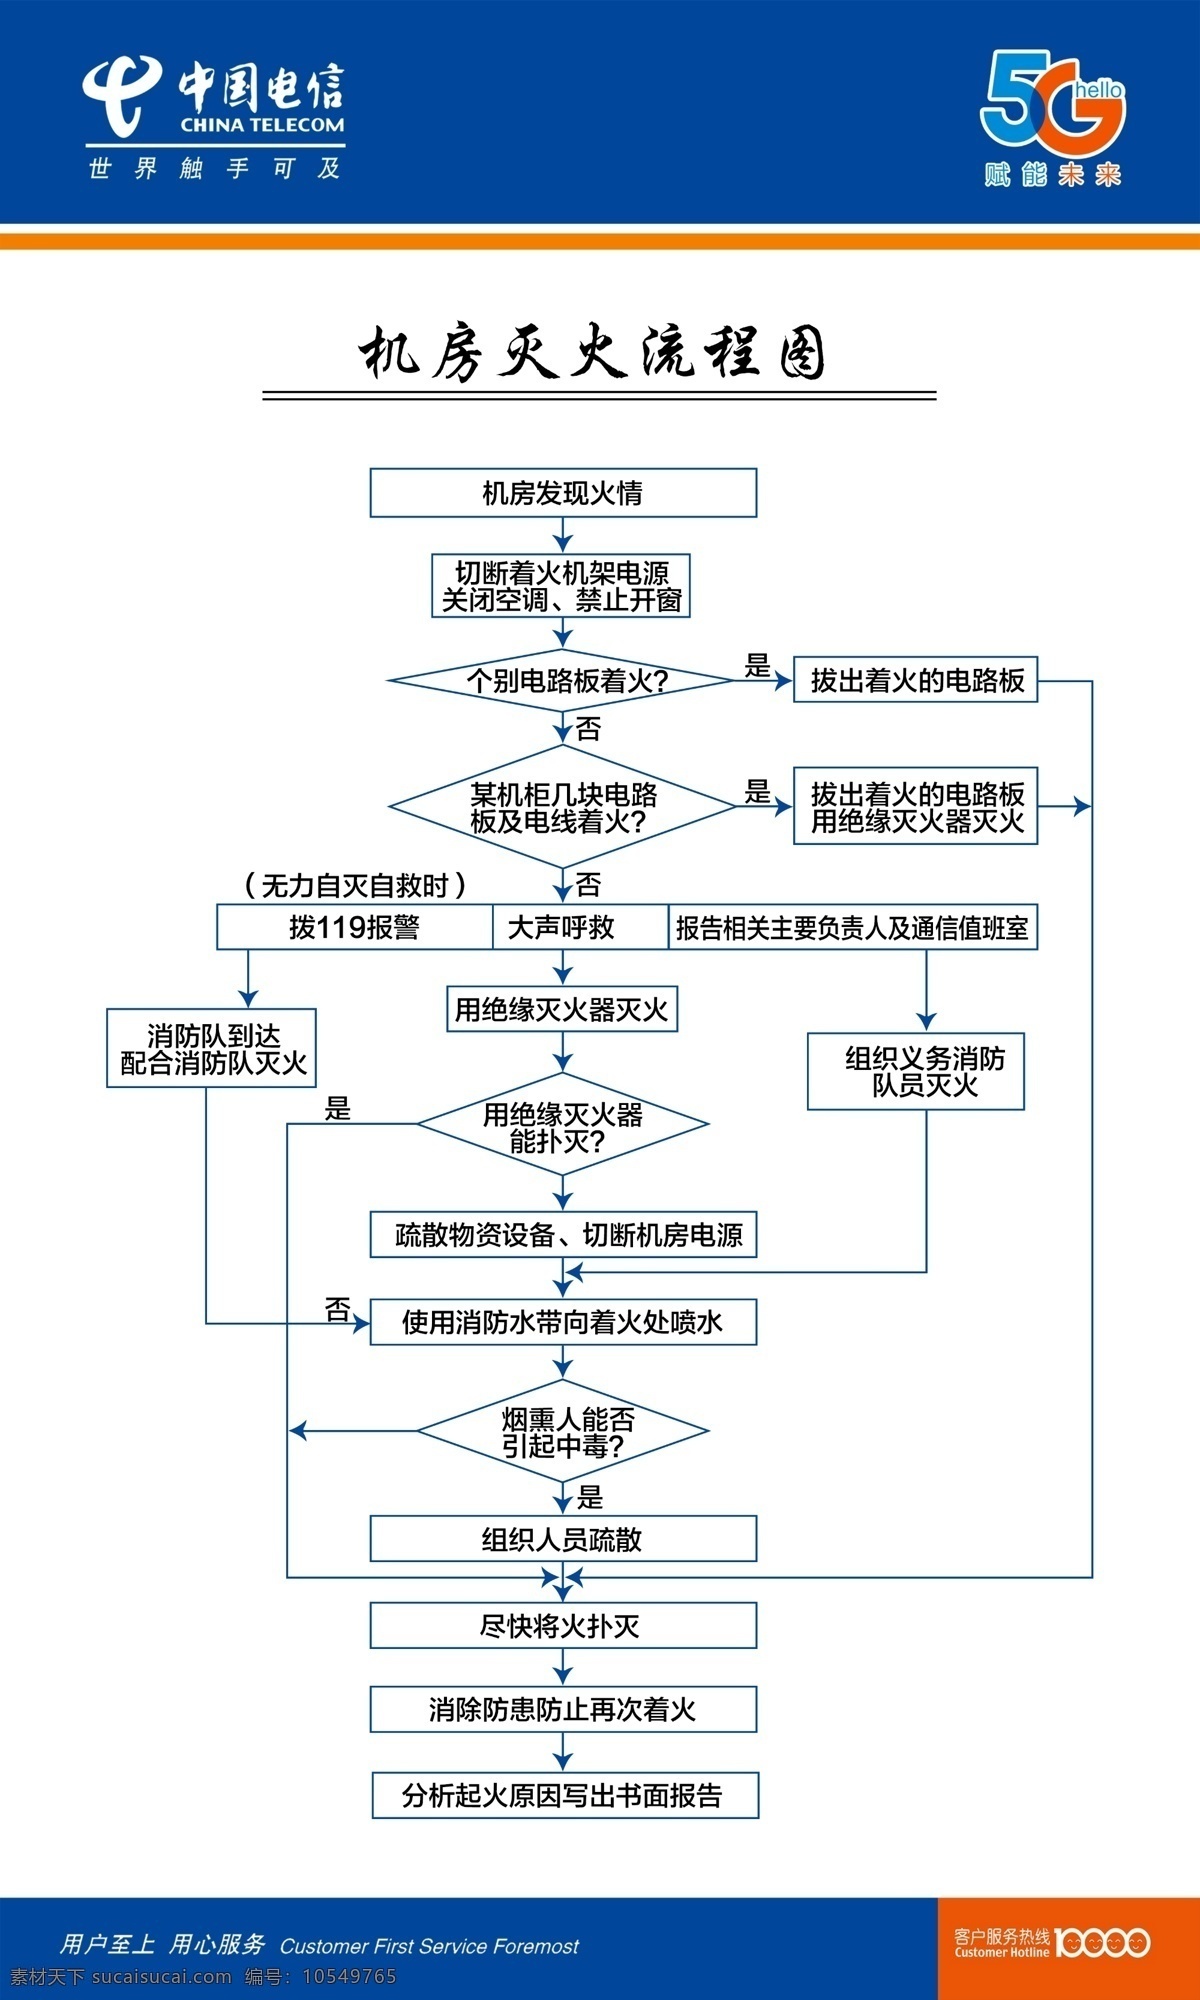 机房 灭火 流程图 中国电信 电信5g 电信 5g 制度 管理制度 机房制度 安全 灭火流程图